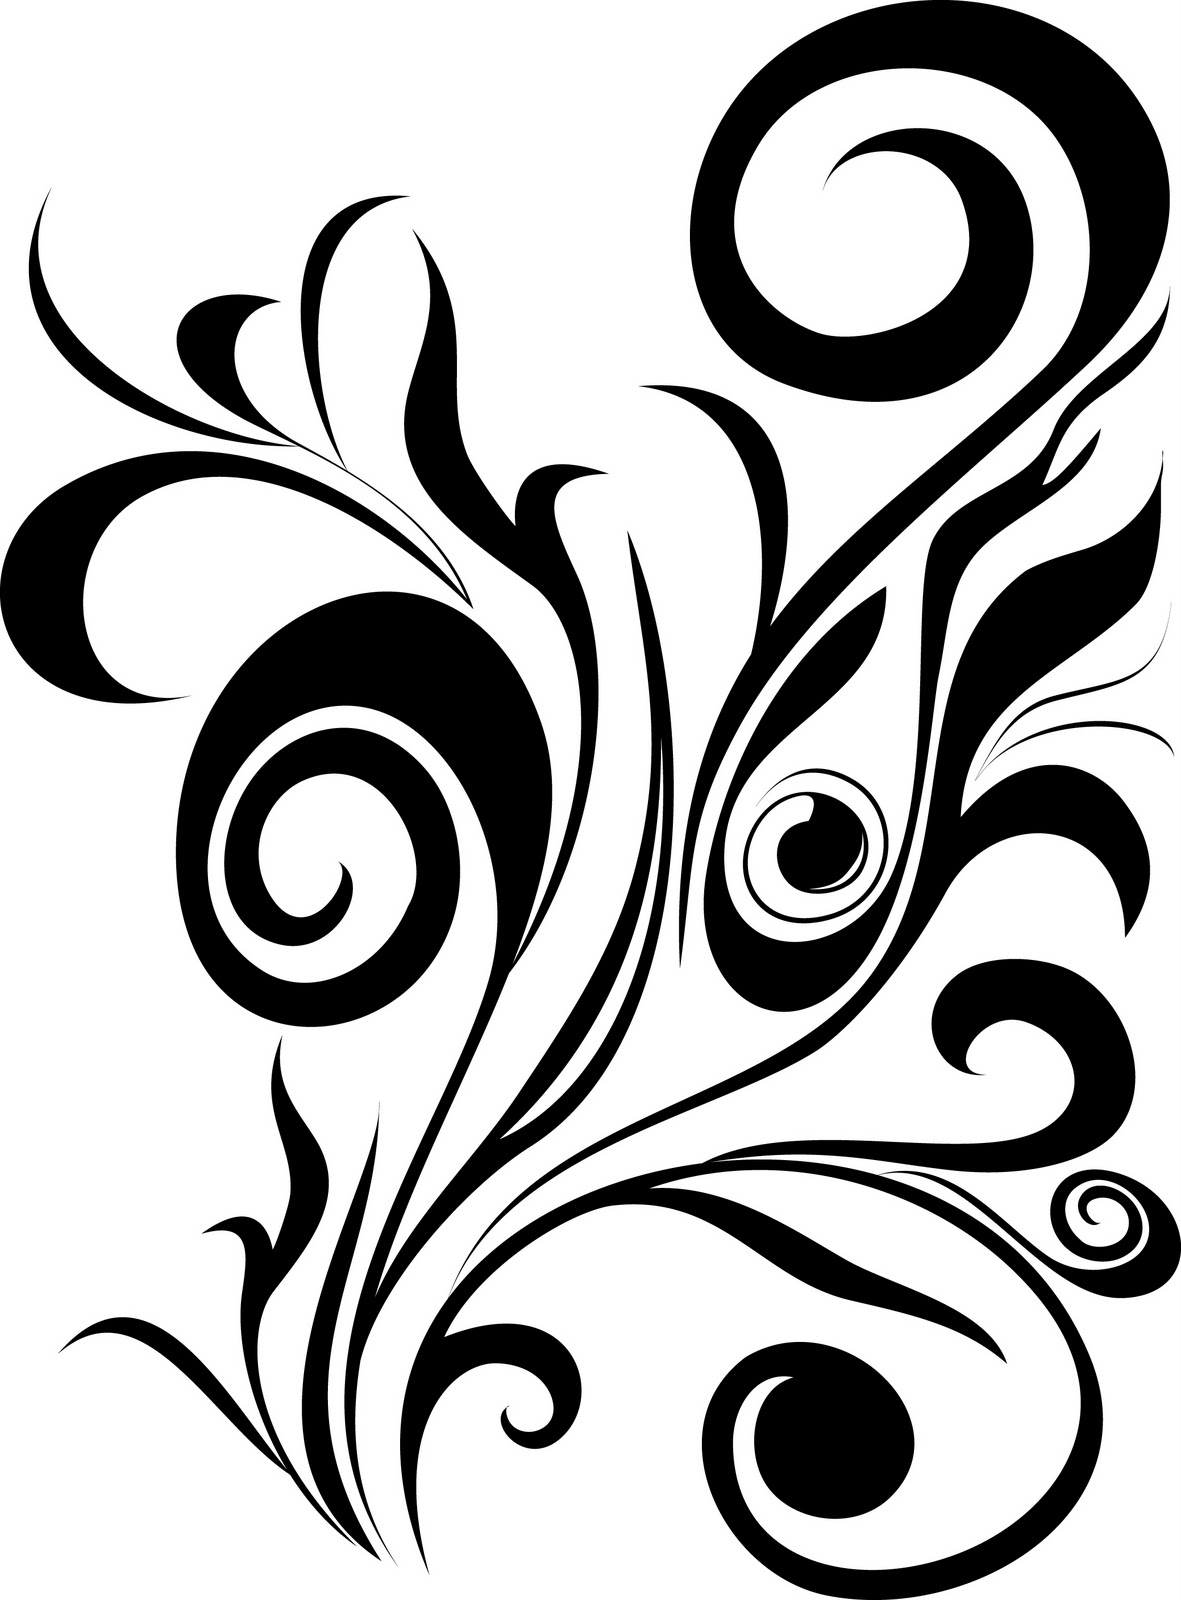 Flower Drawing Okir Design Pattern Easy - josefinromskaugdrommen